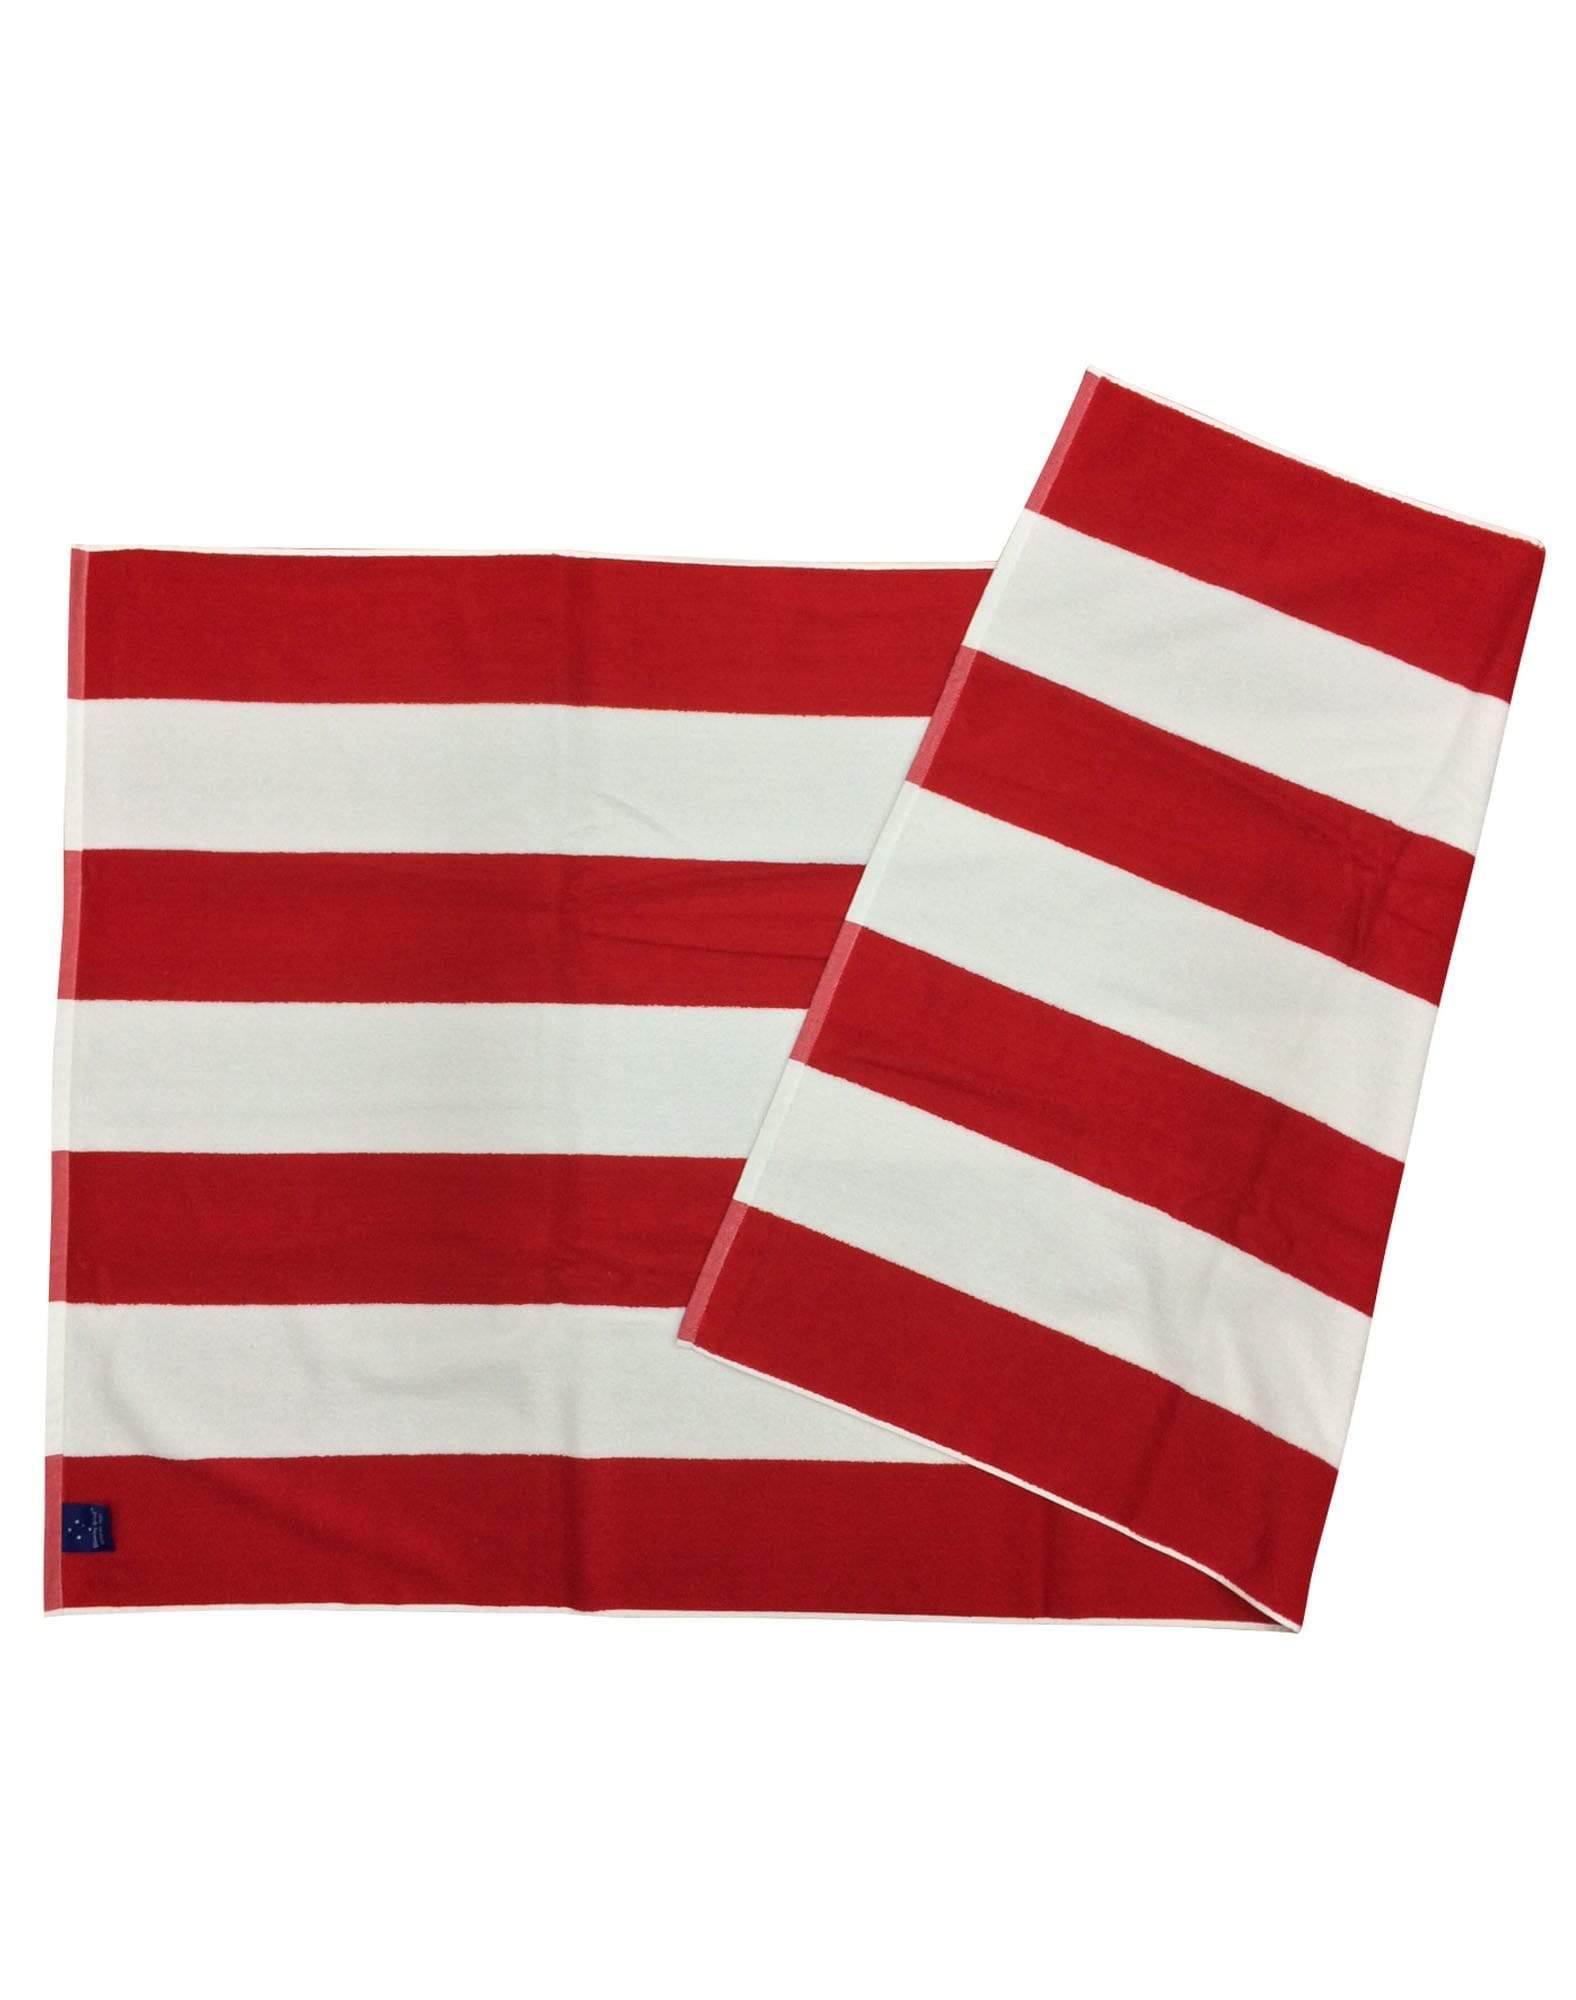 Striped Beach Towel TW07 Work Wear Australian Industrial Wear "162.5cm (L) 87.5cm (W)" Red/White 